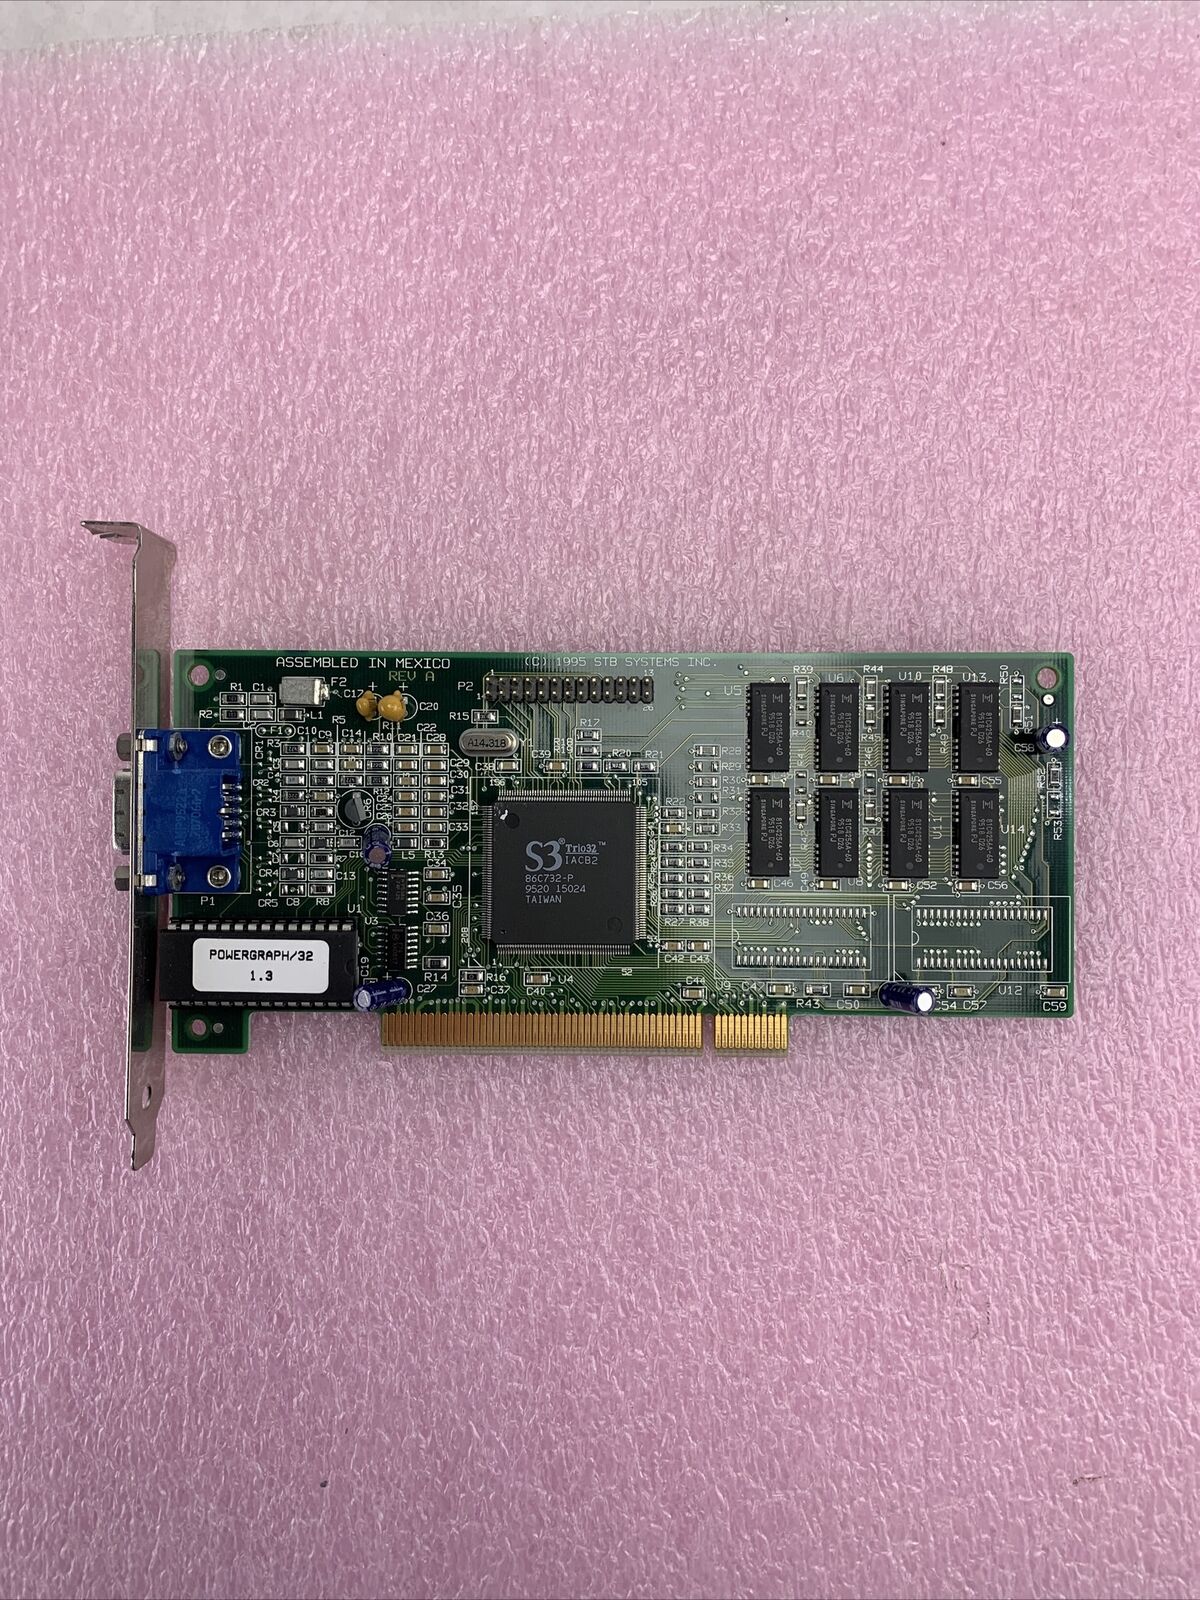 S3 Trio32 IACB2 86C732-P VI-941 PCI